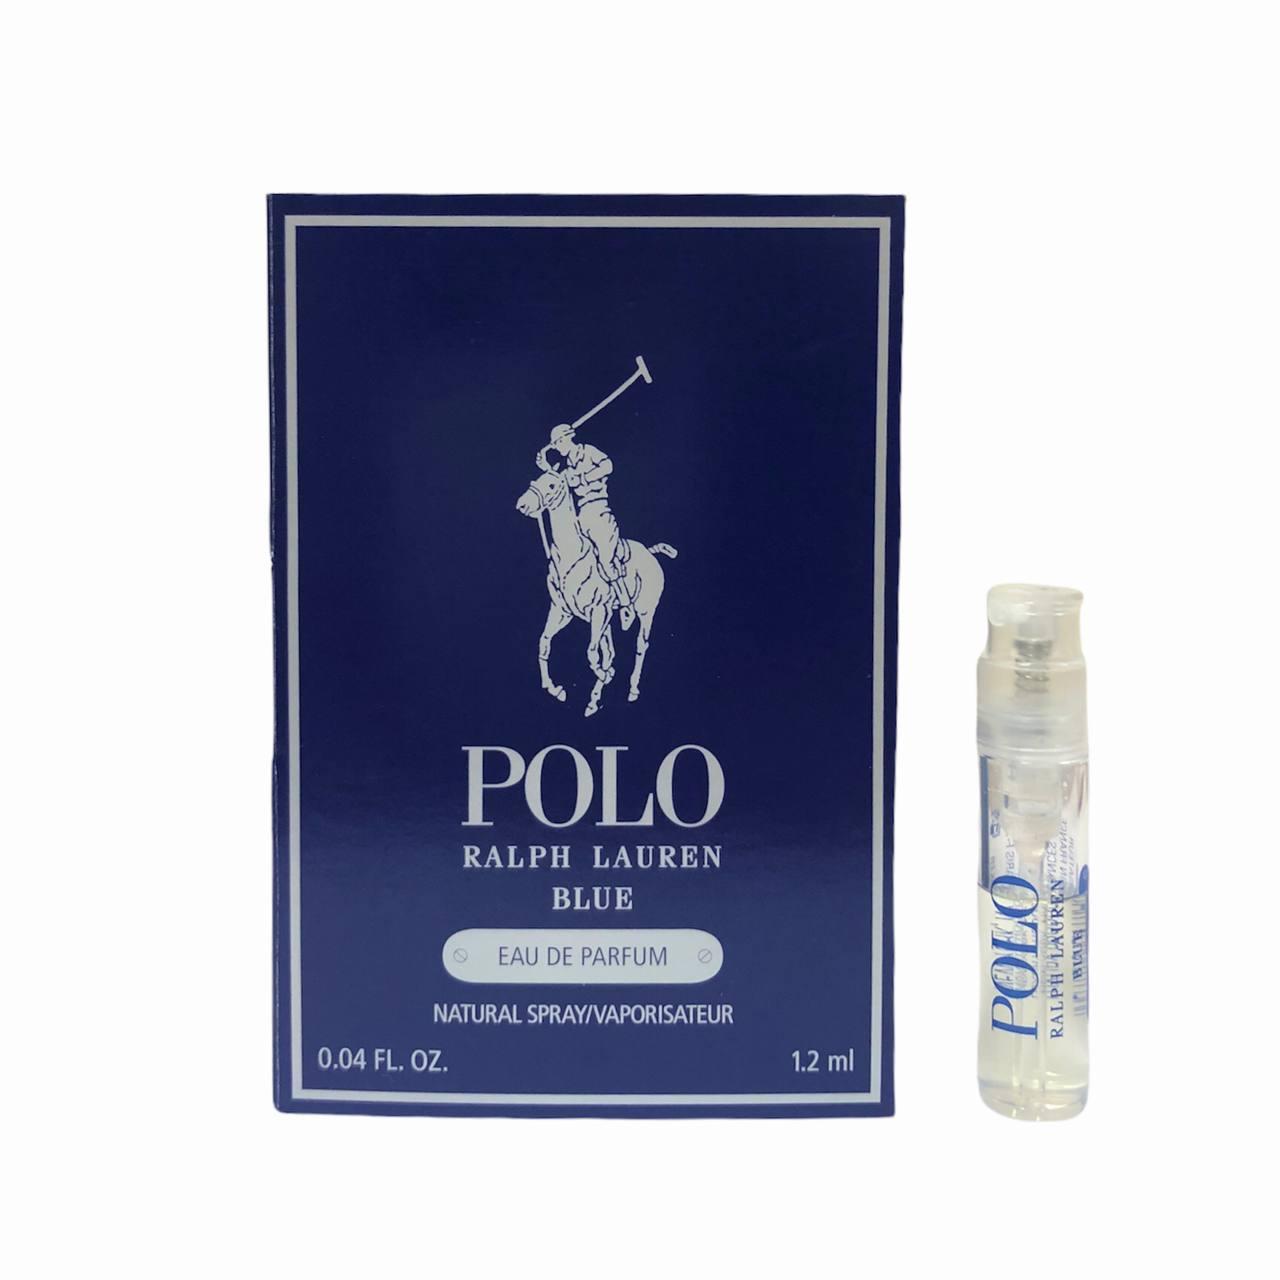 ПРОБНИК мужские духи RALPH LAUREN Polo Blue парфюмированная вода 1,2ml, свежий древесный фужерный аромат